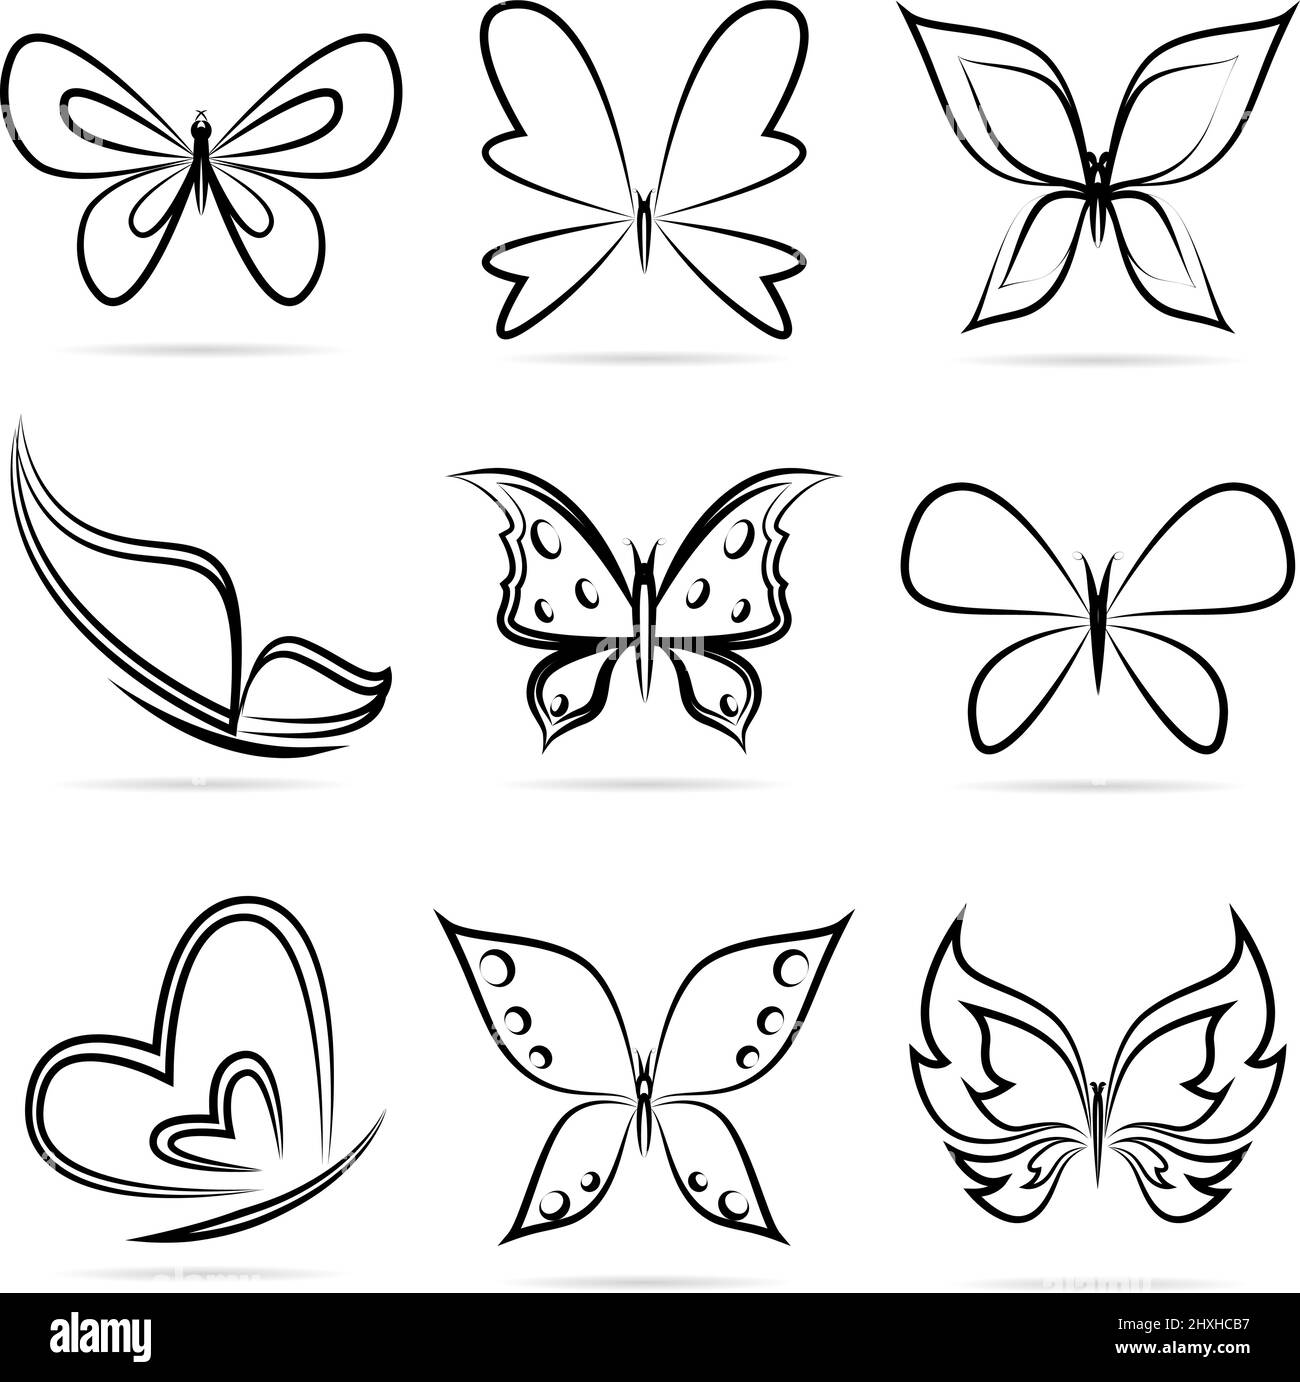 Vektor-Gruppe von Schmetterlingen auf weißem Hintergrund. Leicht editierbare Vektorgrafik mit Ebenen. Stock Vektor